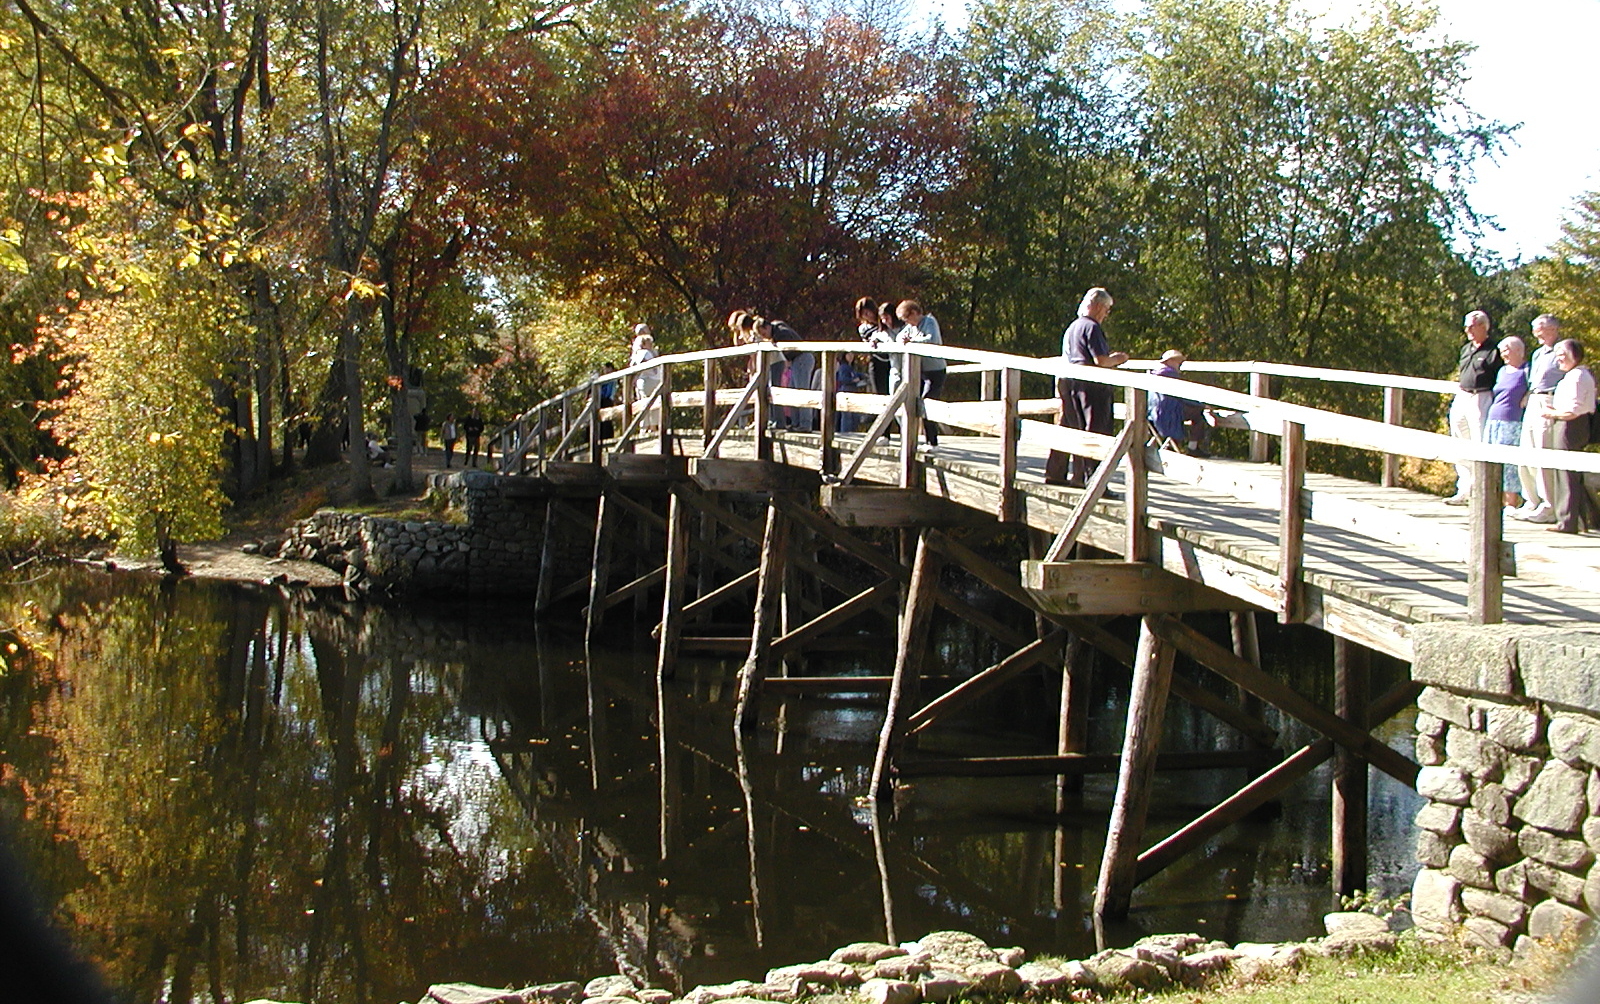 Concord's old north bridge in fall #2